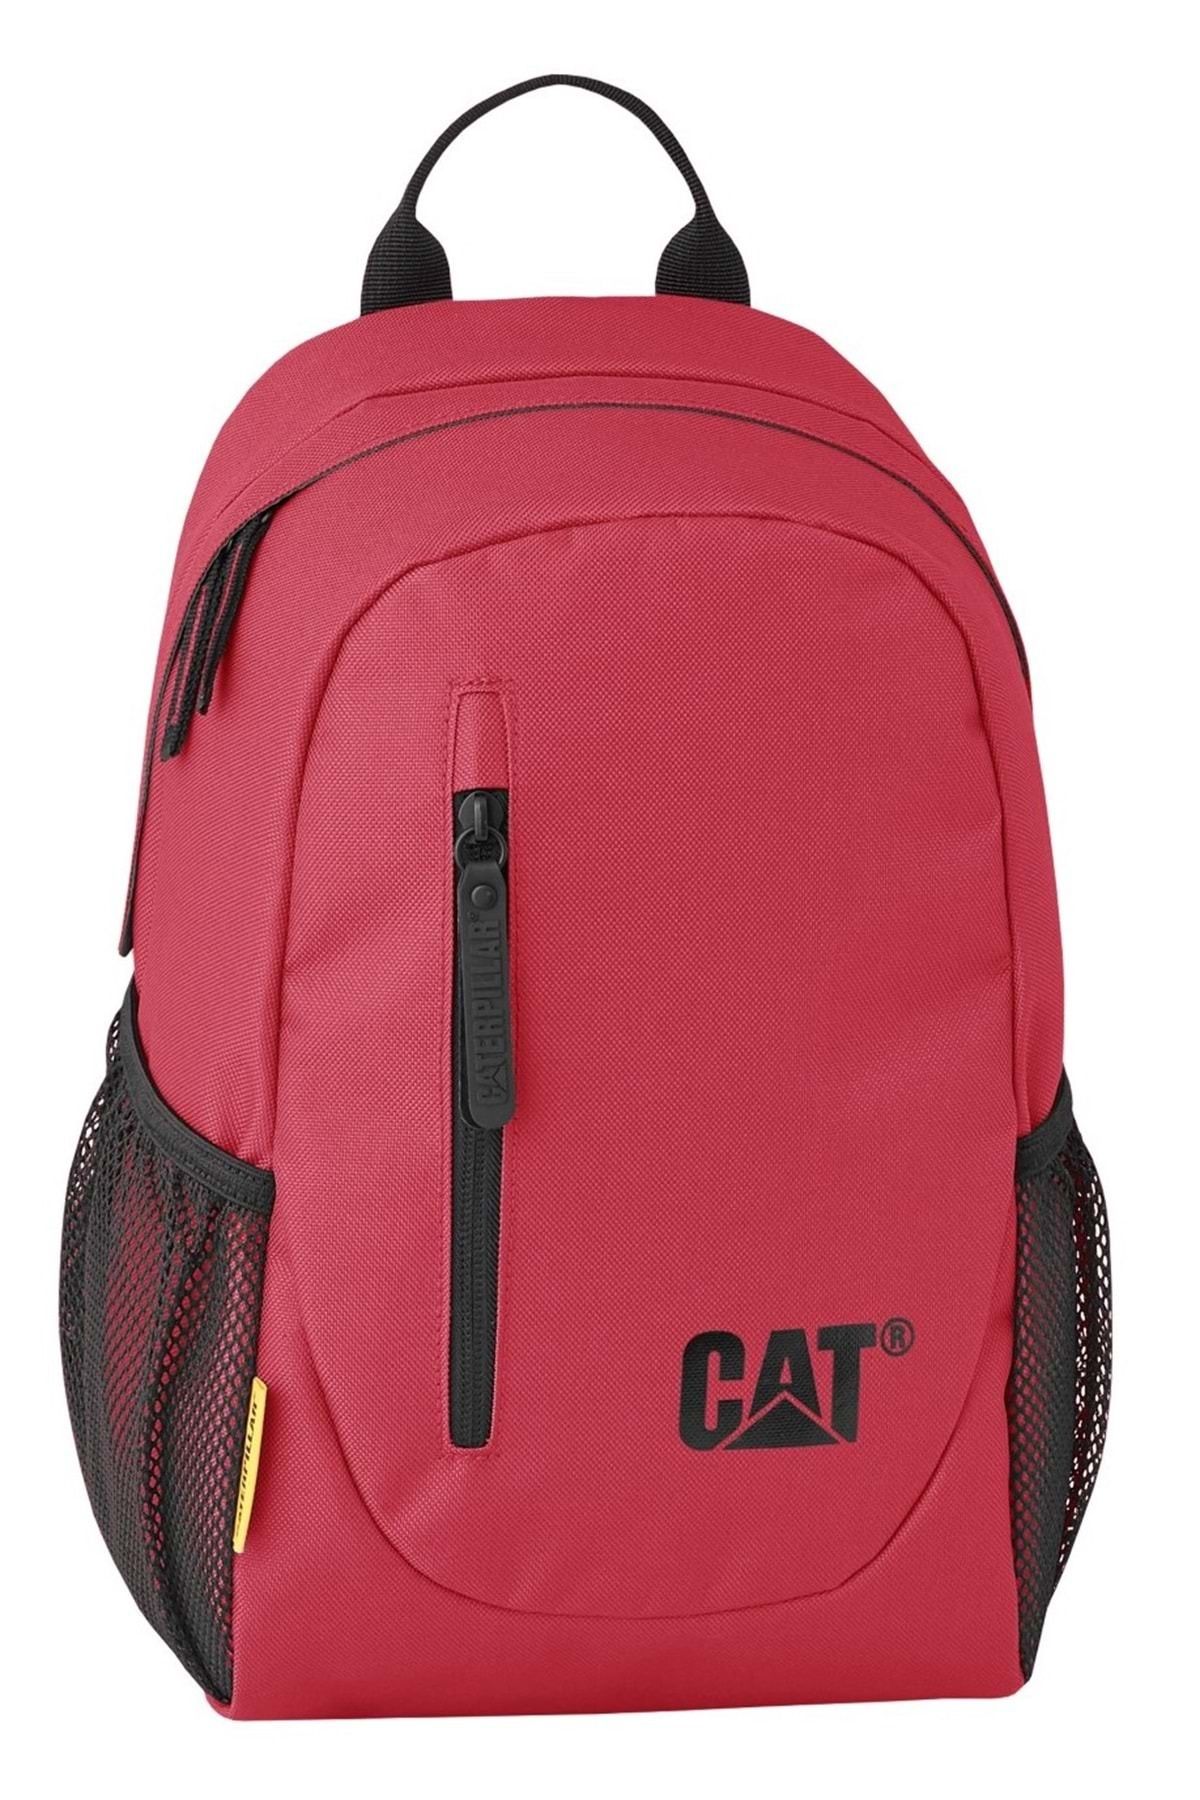 Caterpillar Kids Backpack 84360- 350 G / 12 L Unisex Mini Kids Sırt Çantası Kırmızı